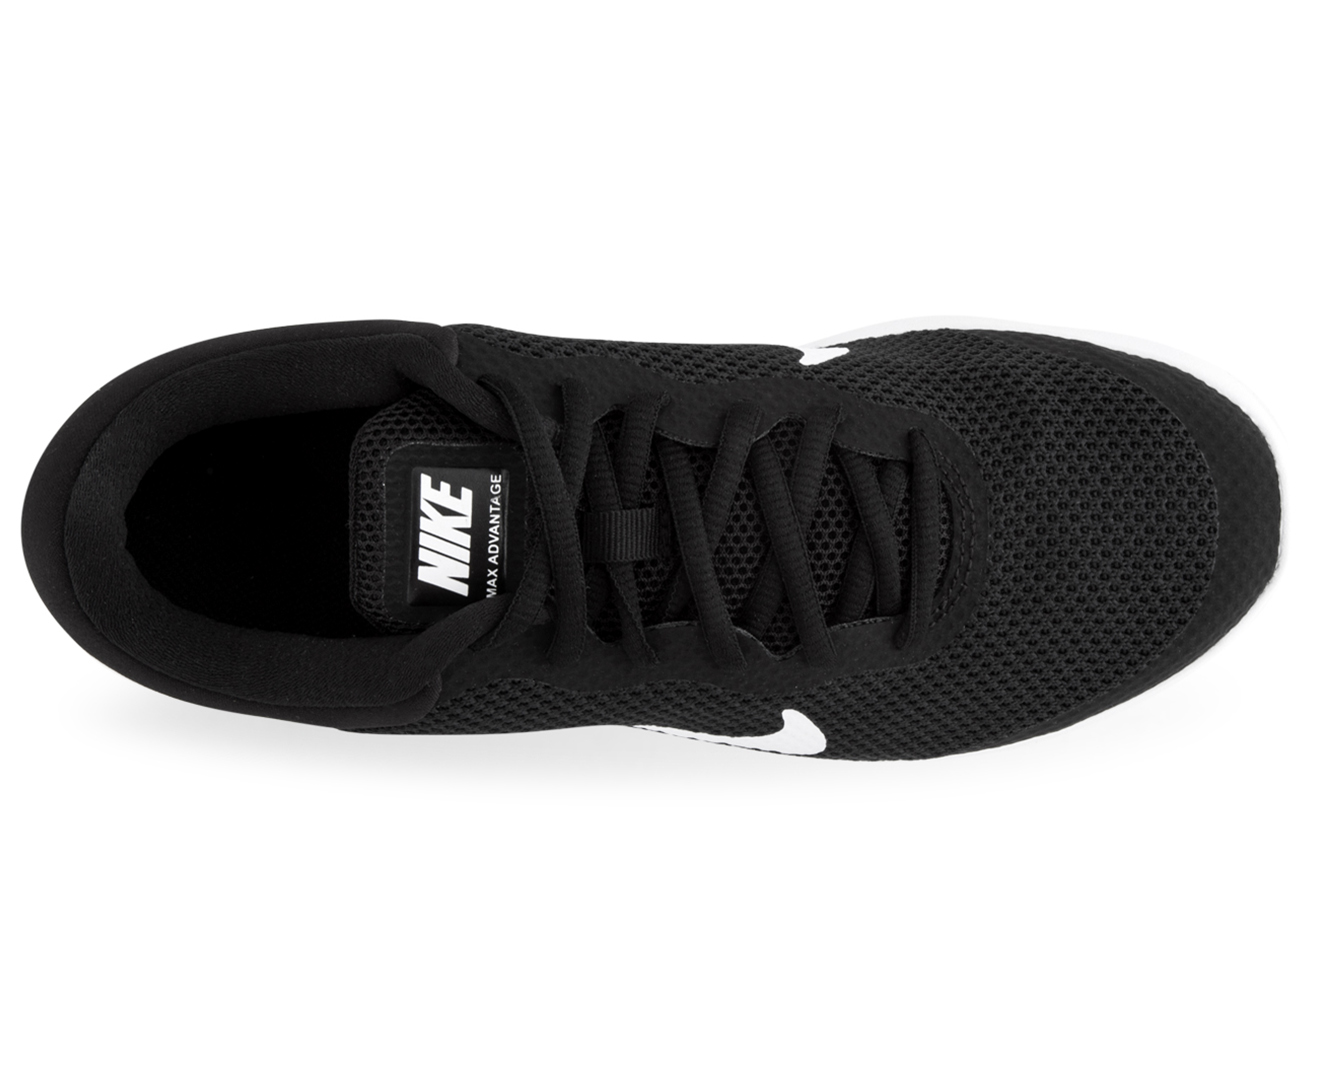 Nike Women's Air Max Advantage Shoe - Black/White | Catch.co.nz